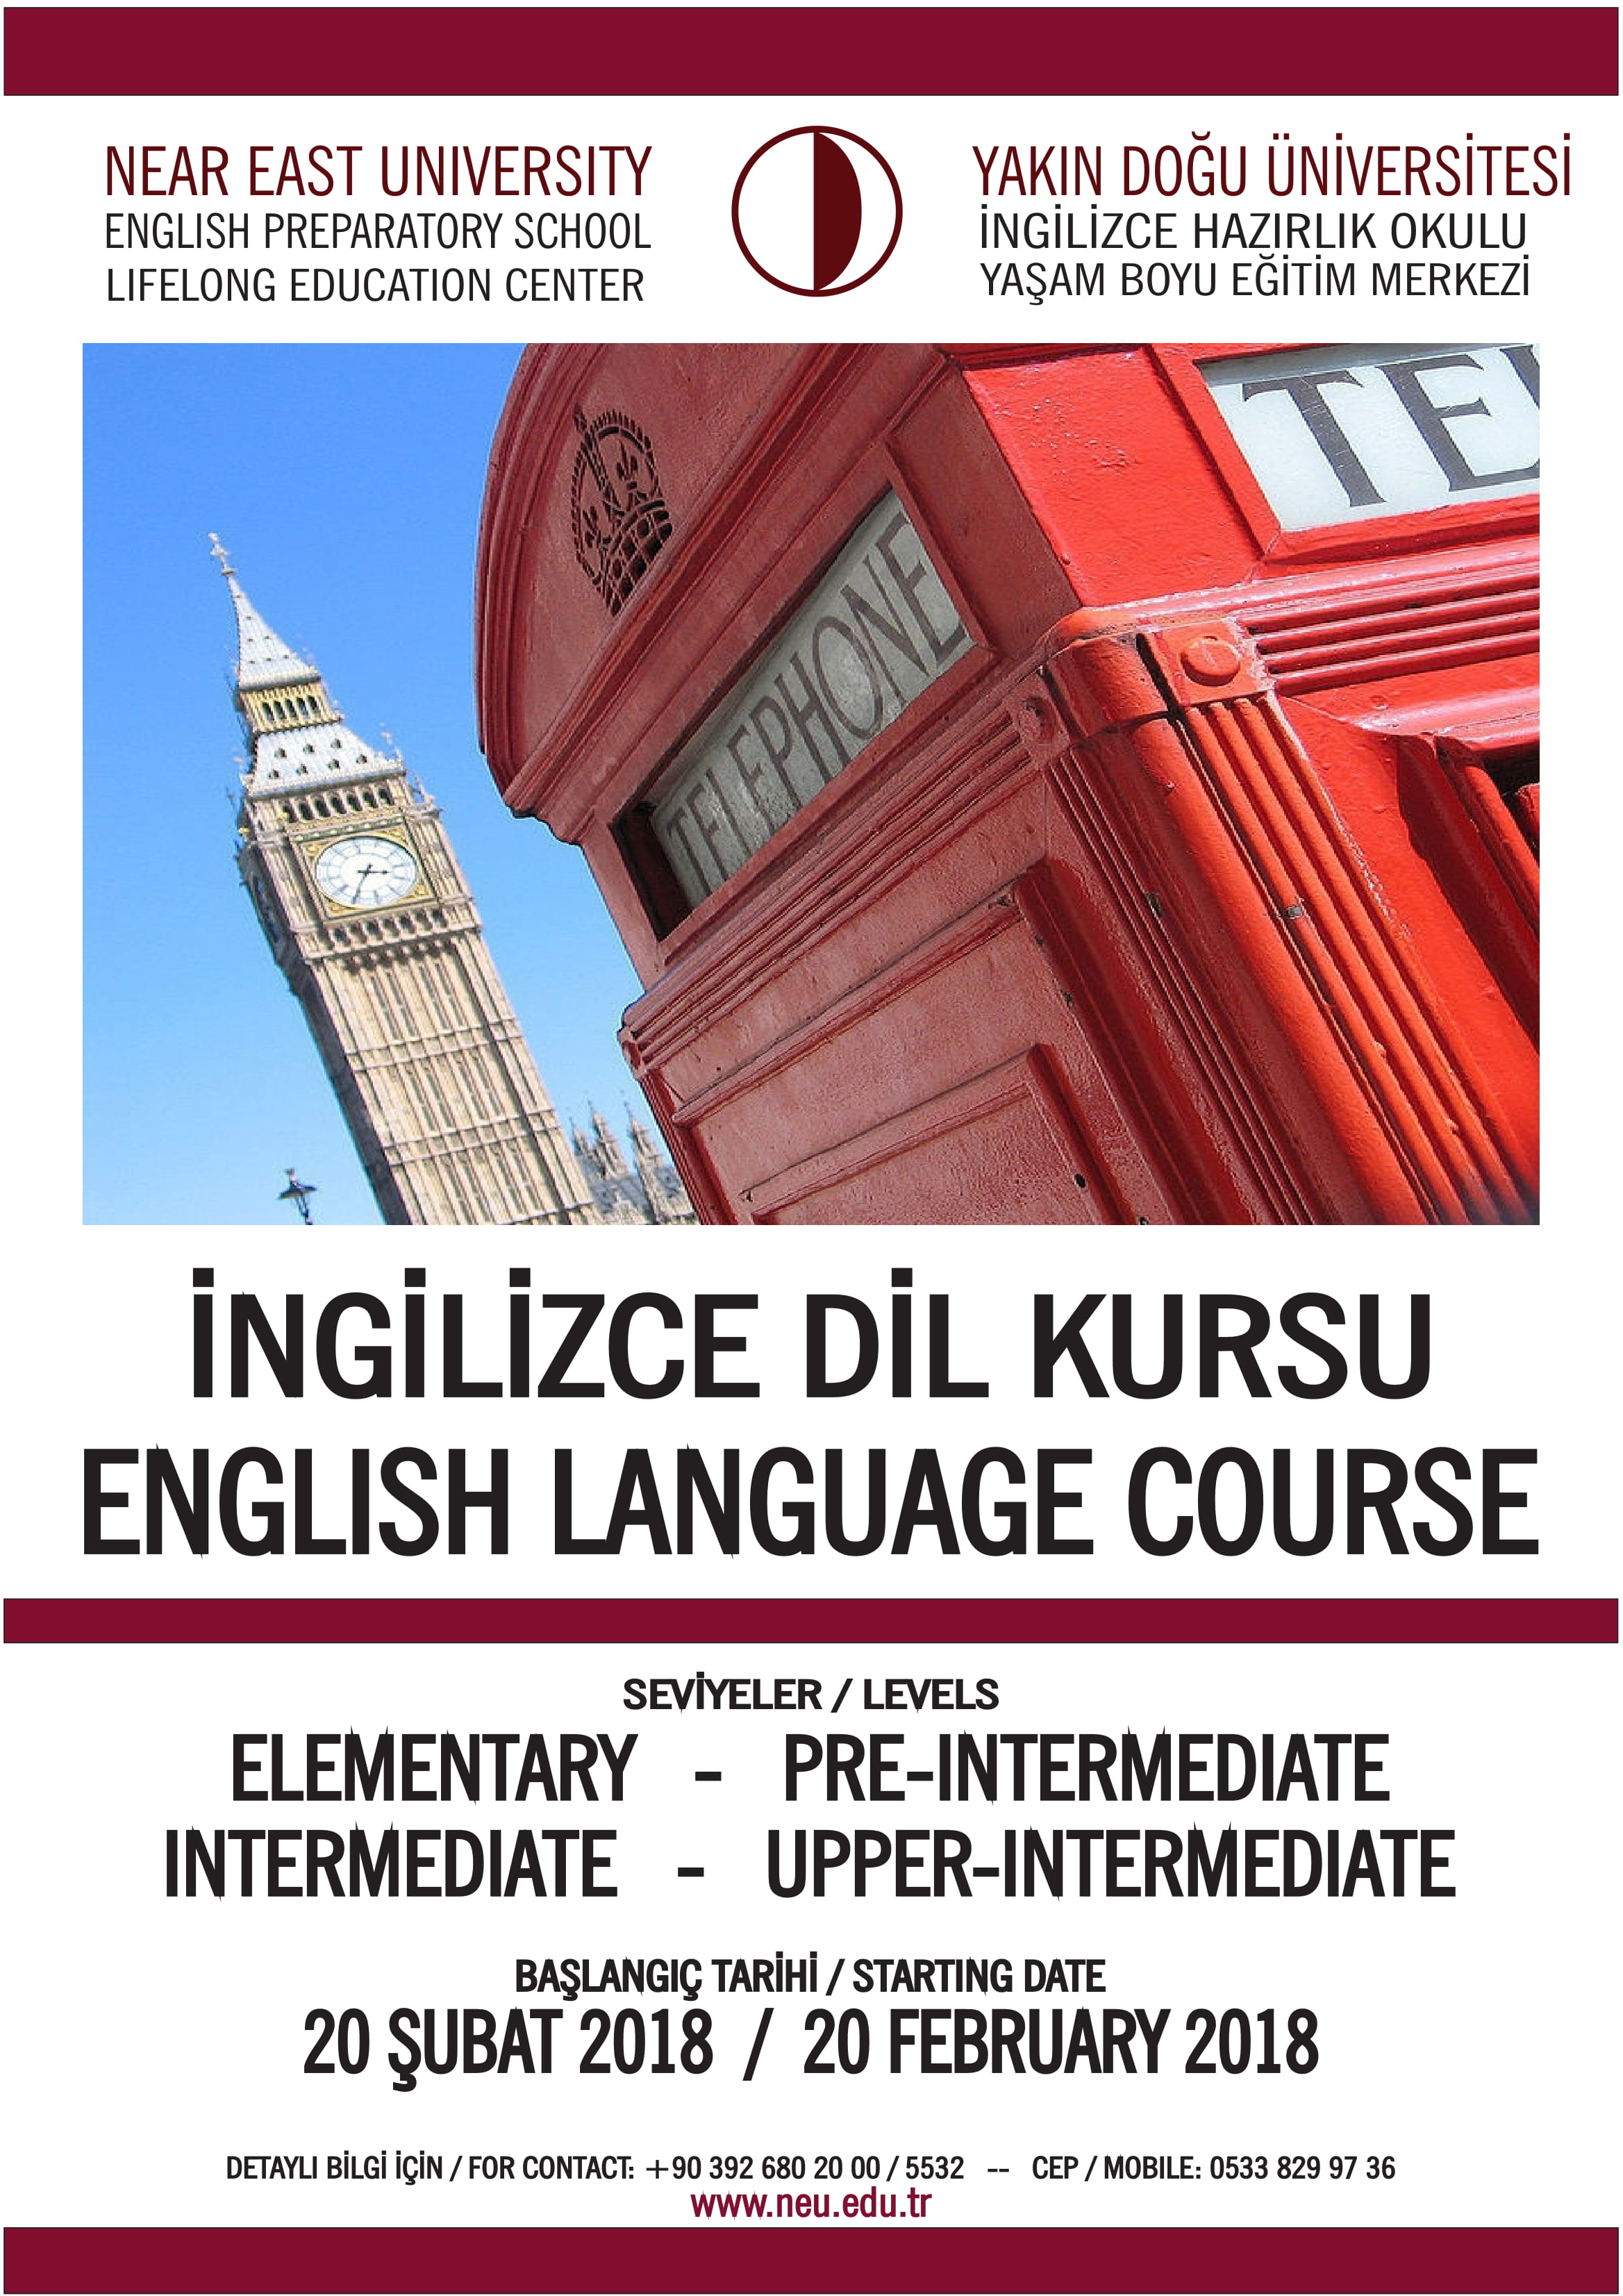 Yakın Doğu Üniversitesi YABEM’den Her Seviyede Herkese Açık İngilizce Kursları 20 Şubatta Başlıyor